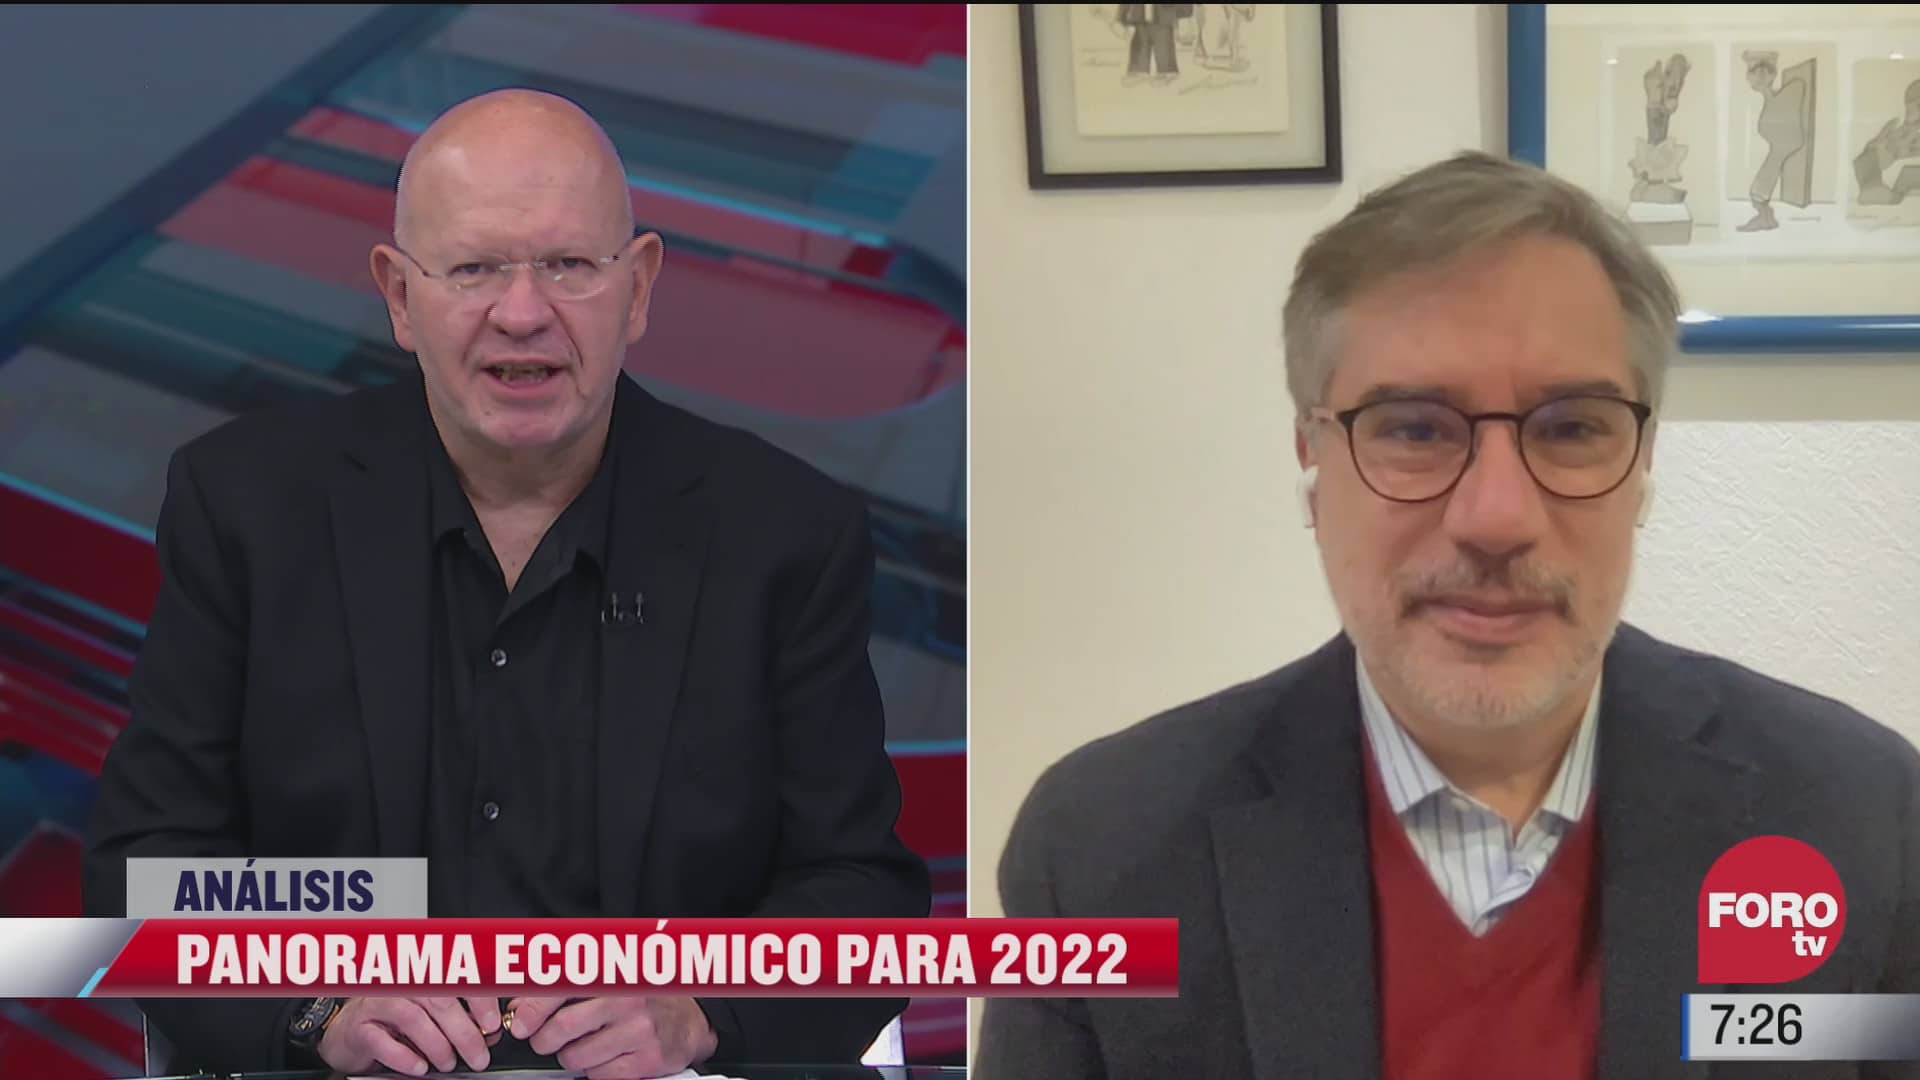 panorama economico para 2022 en mexico el analisis en estrictamente personal